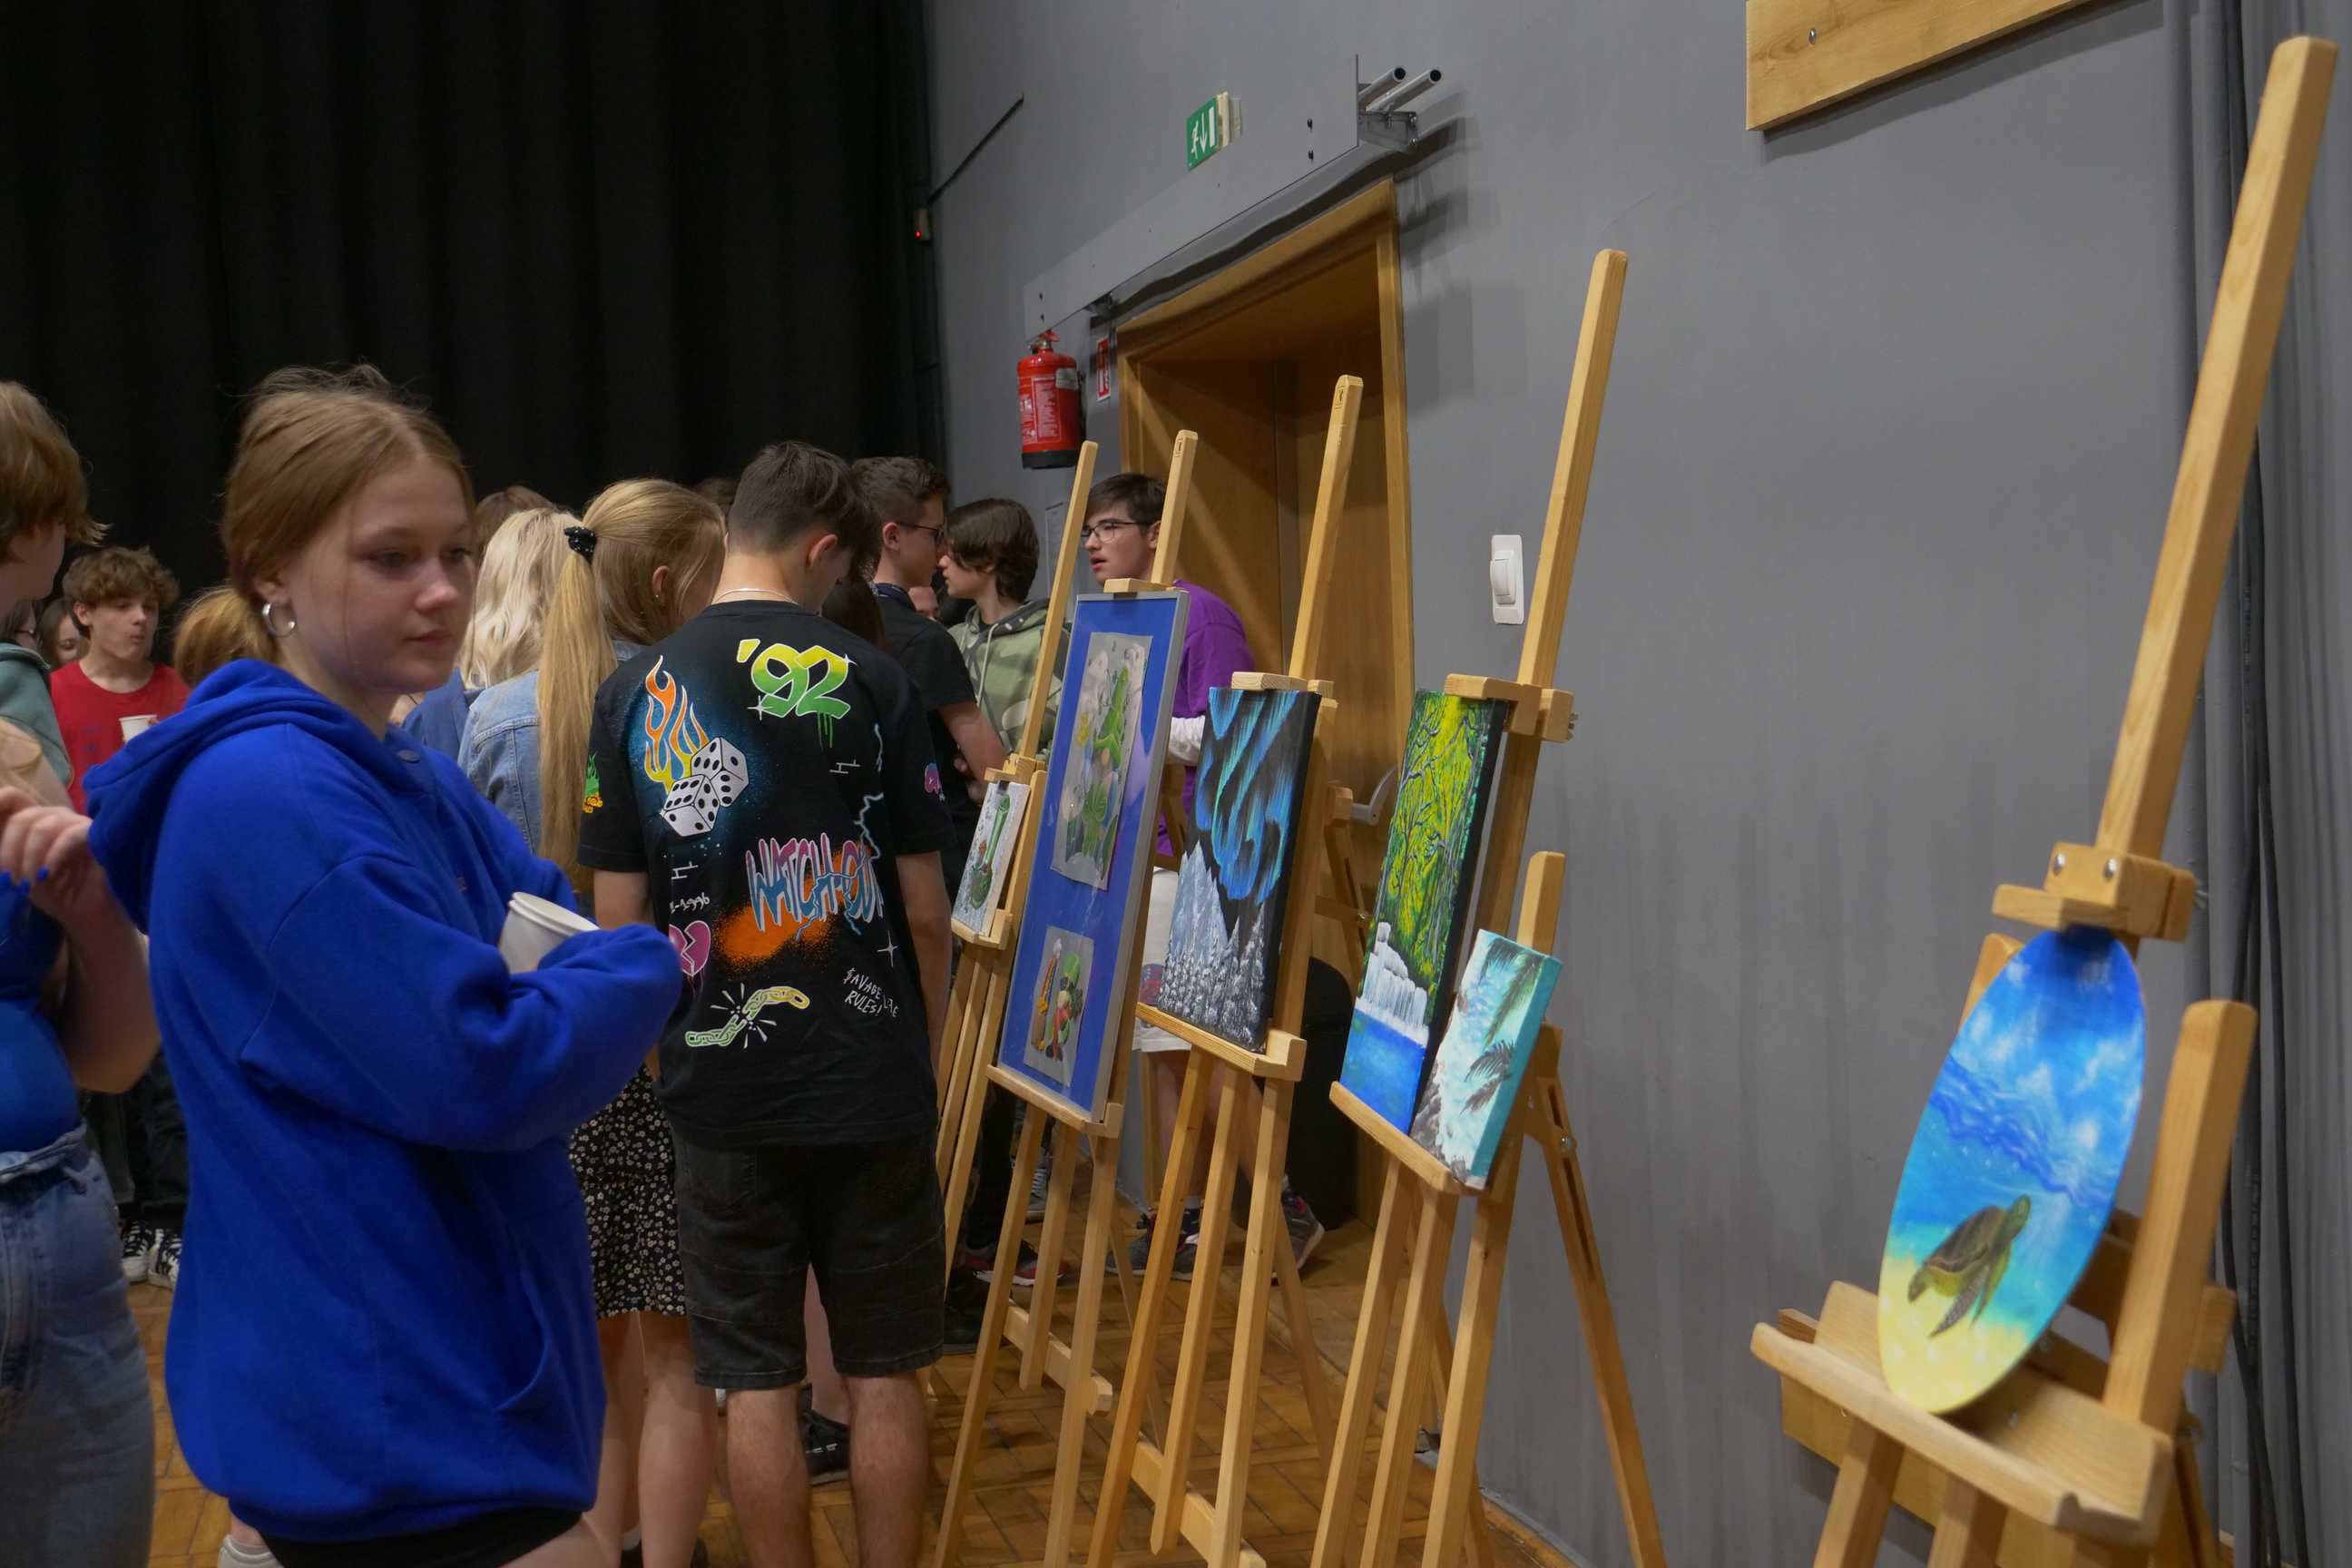 uczniowie oglądający obrazy na wernisażu malarskiego "Podróże wyobraźni" uczniów ZSOiT w Wojkowicach w Miejskim Ośrodku Kultury w Wojkowicach